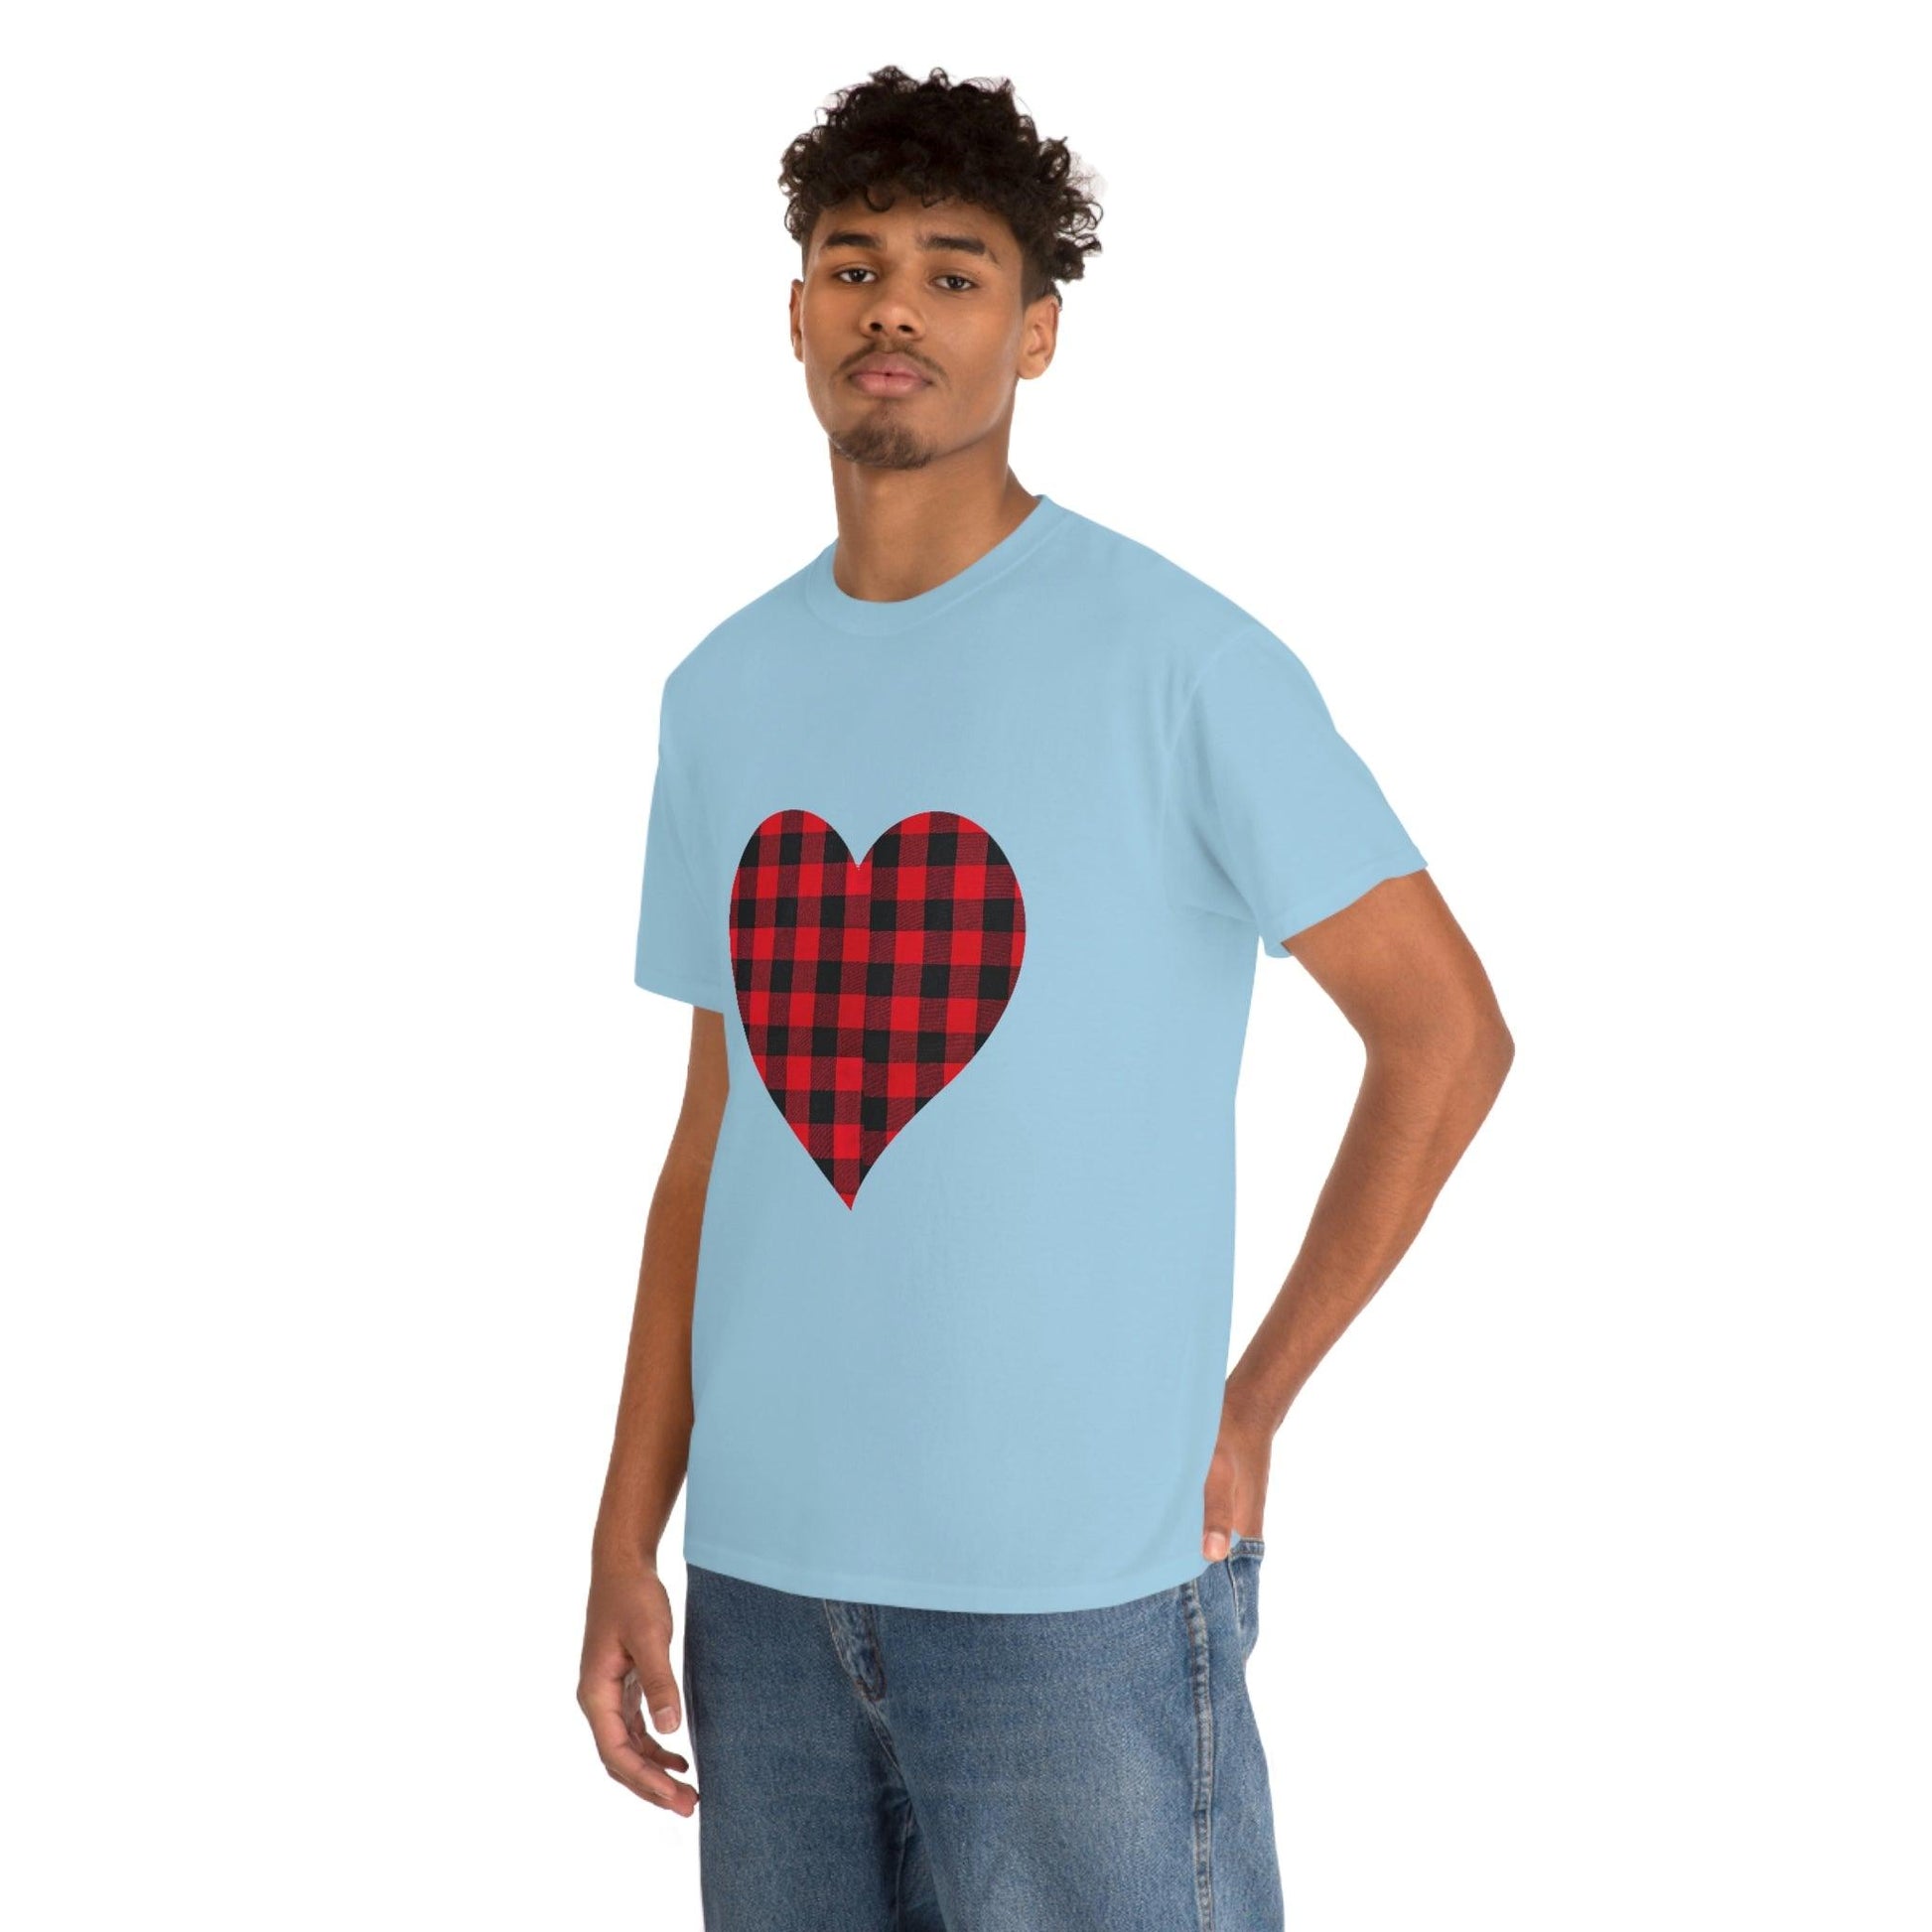 Plaid Heart T-Shirt, - Giftsmojo